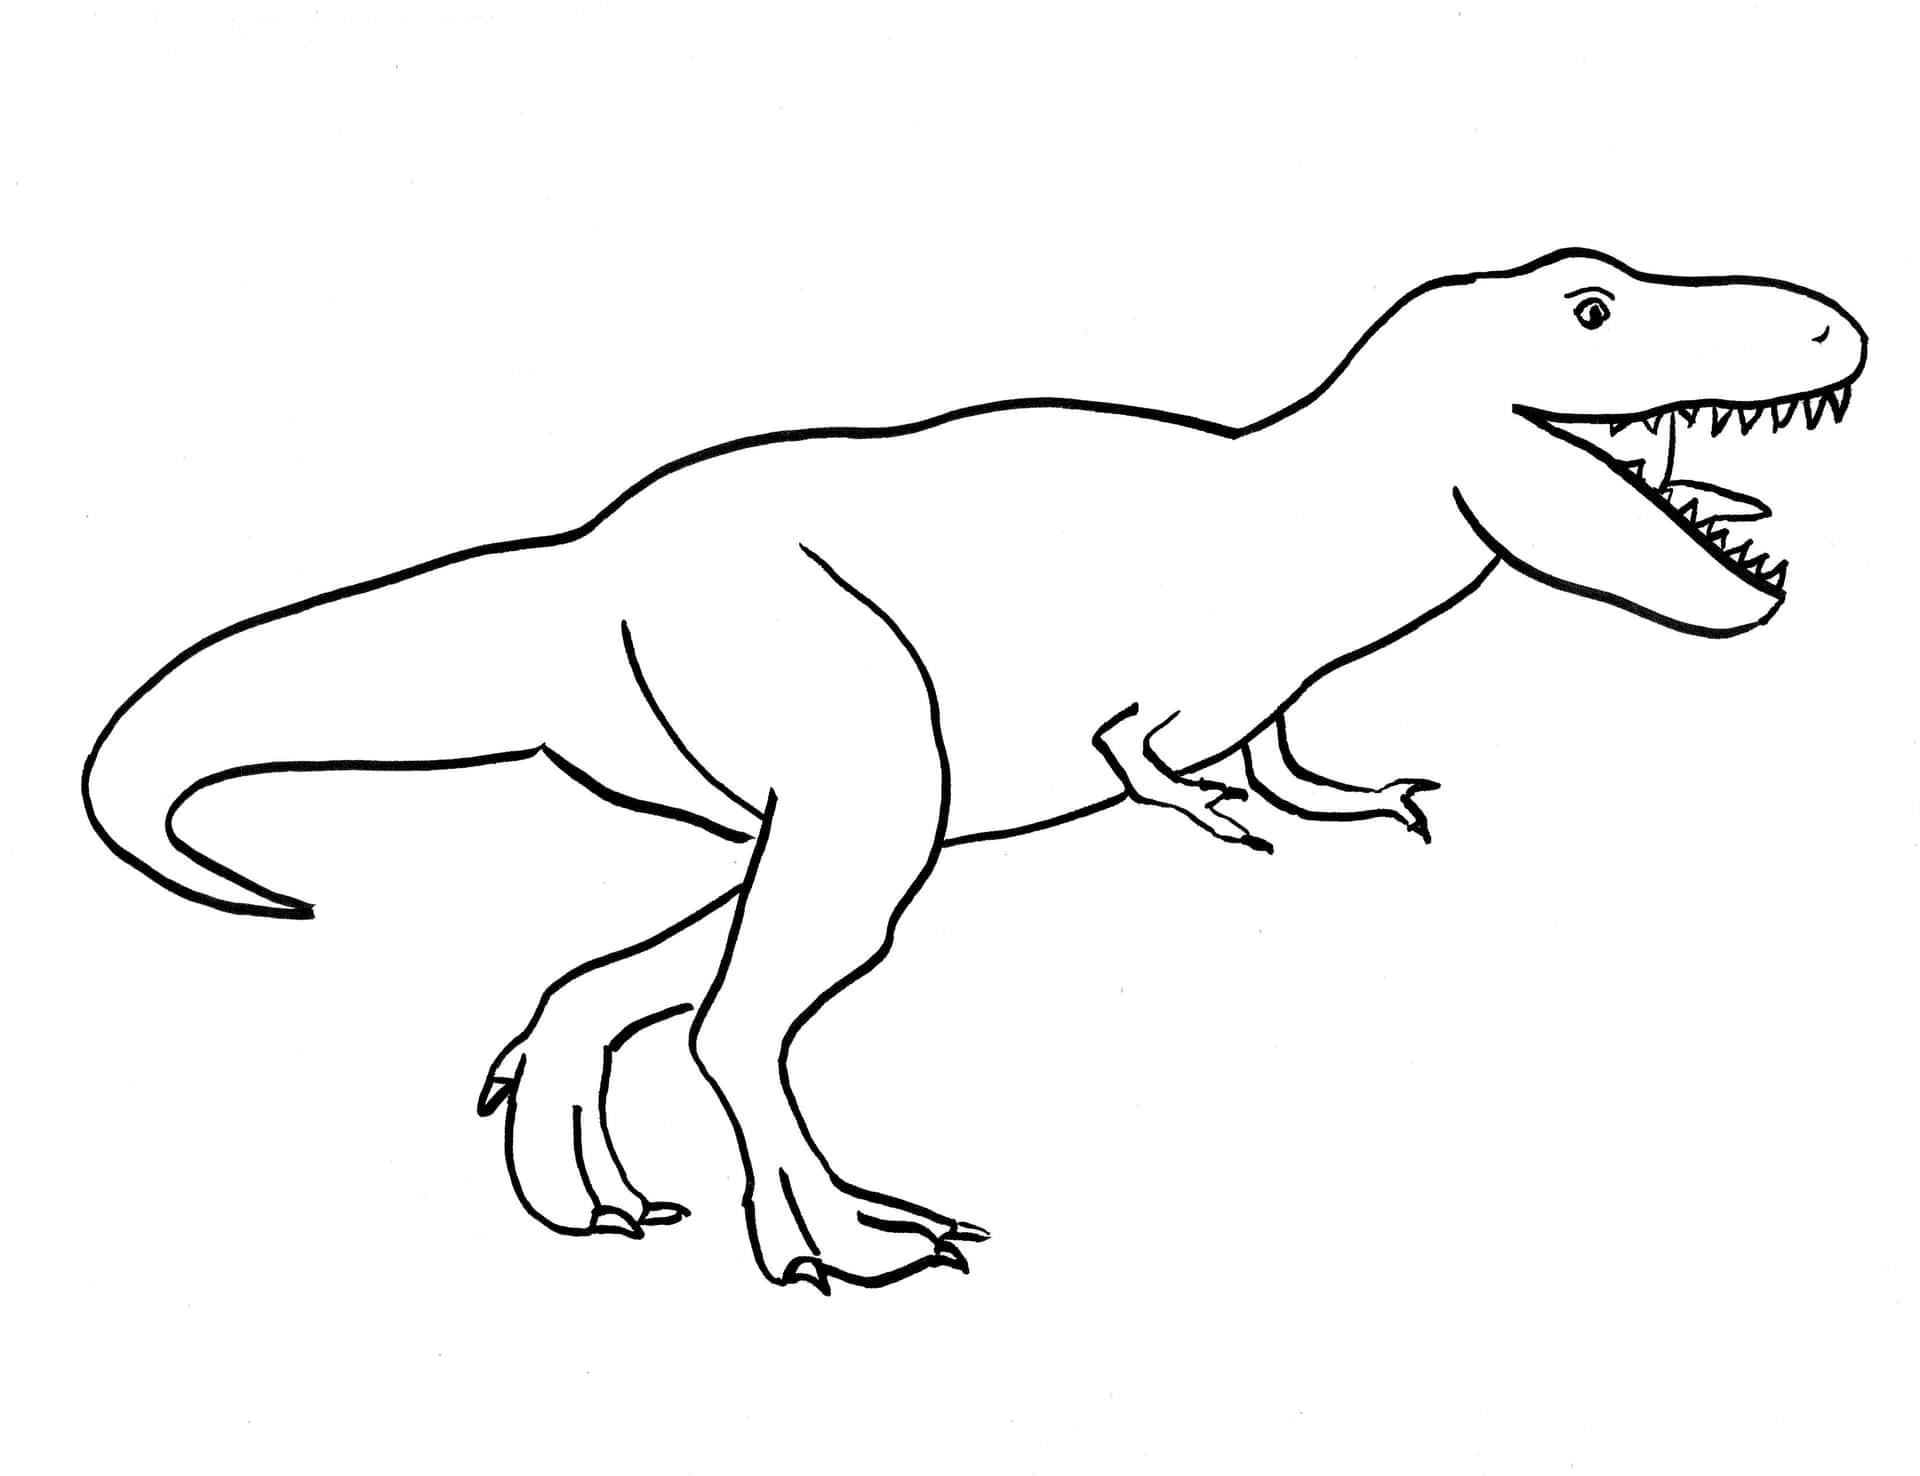 Endetaljerad Teckning Av En Dinosaurie.